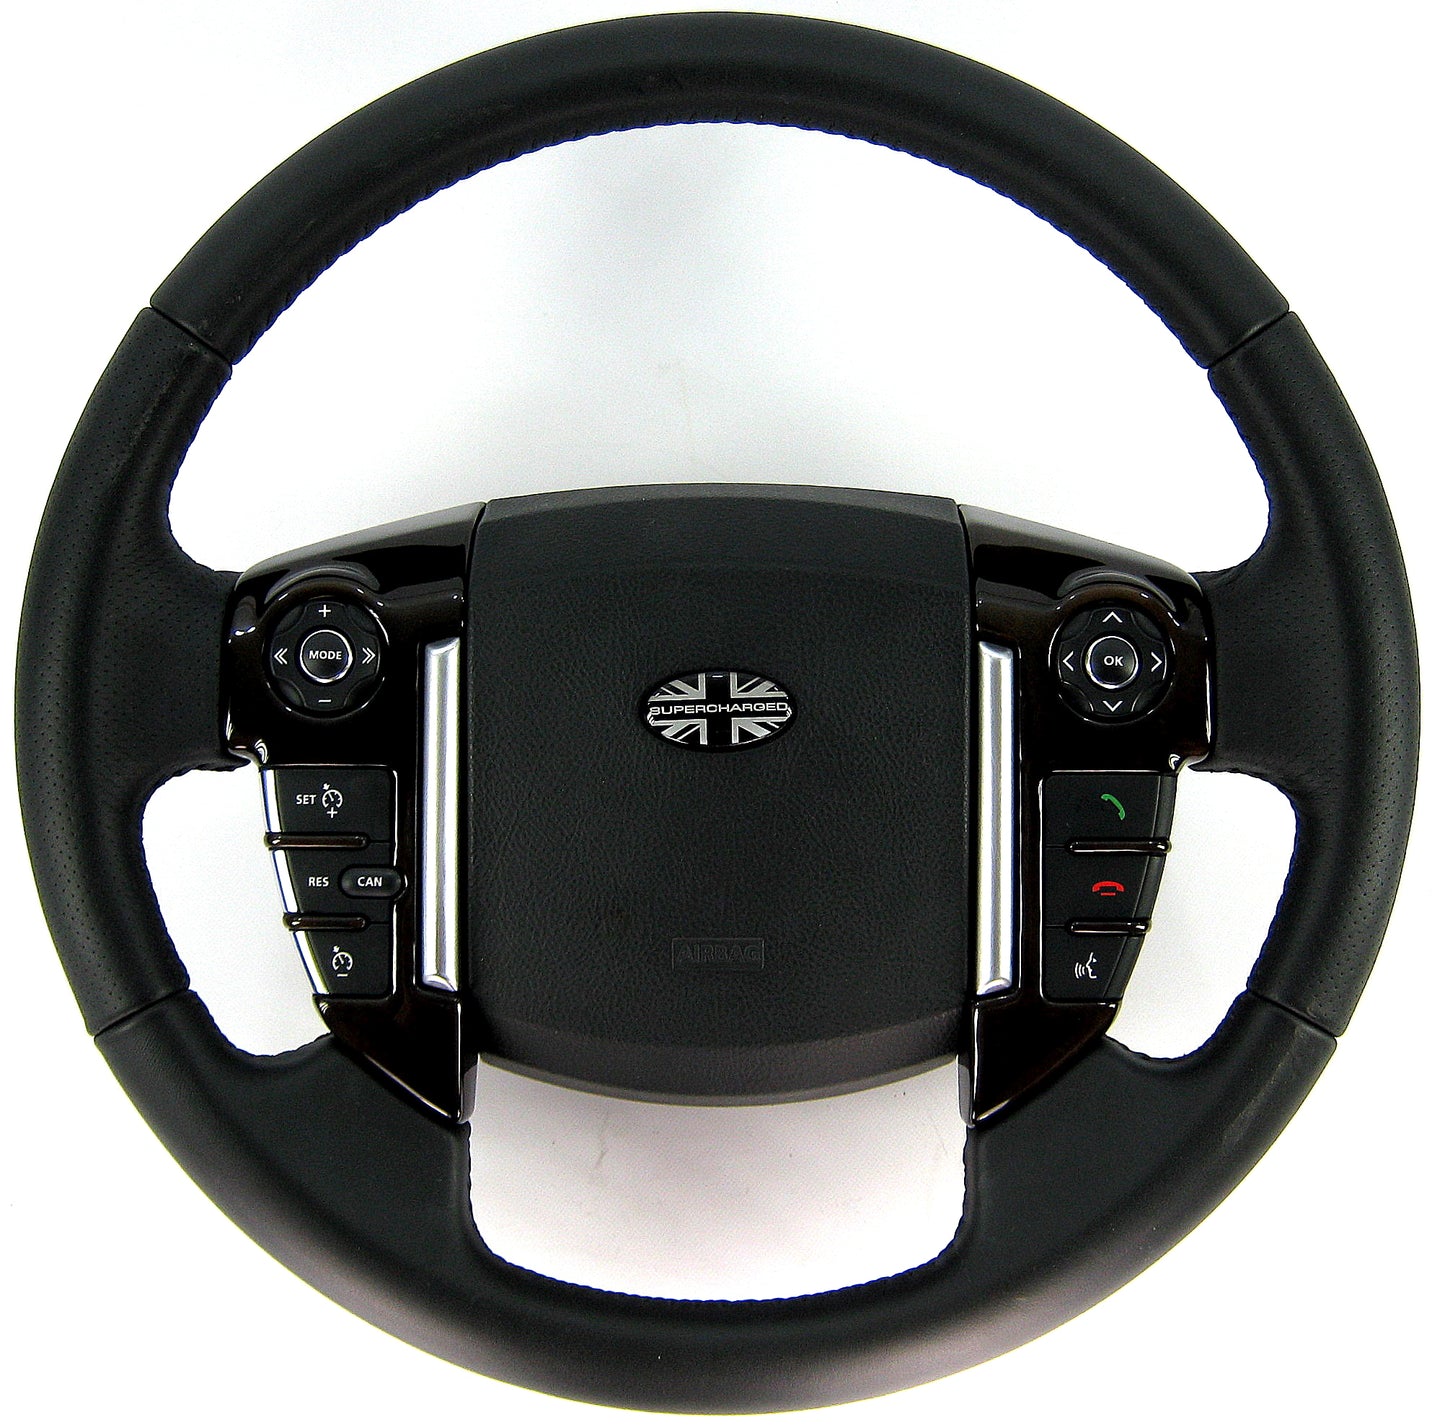 Steering Wheel Switch Packs - Anigre Wood for Range Rover Sport 2010